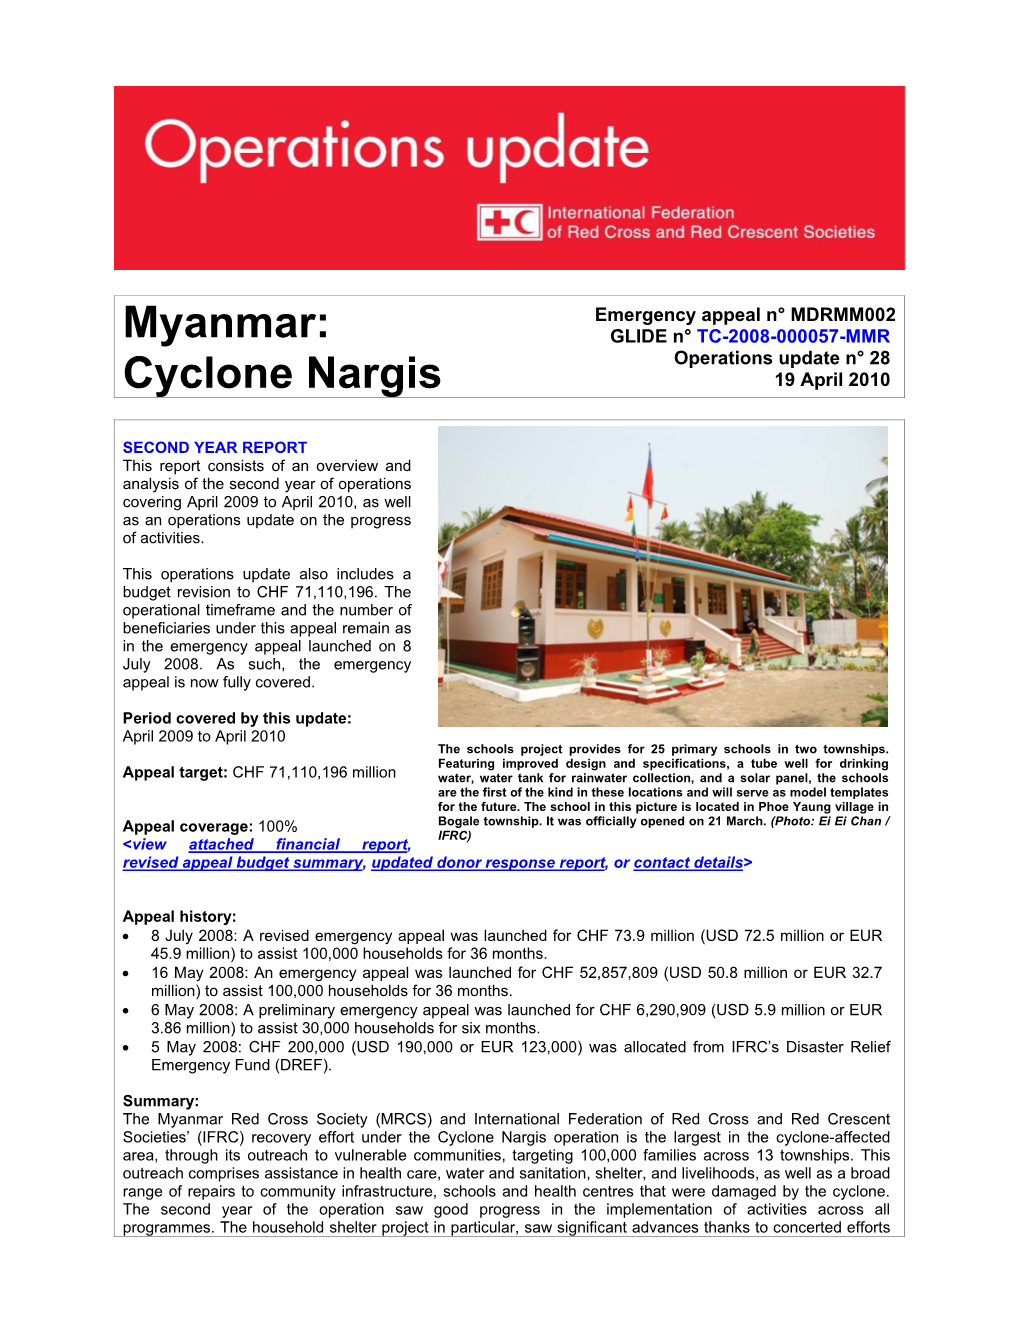 Cyclone Nargis 19 April 2010